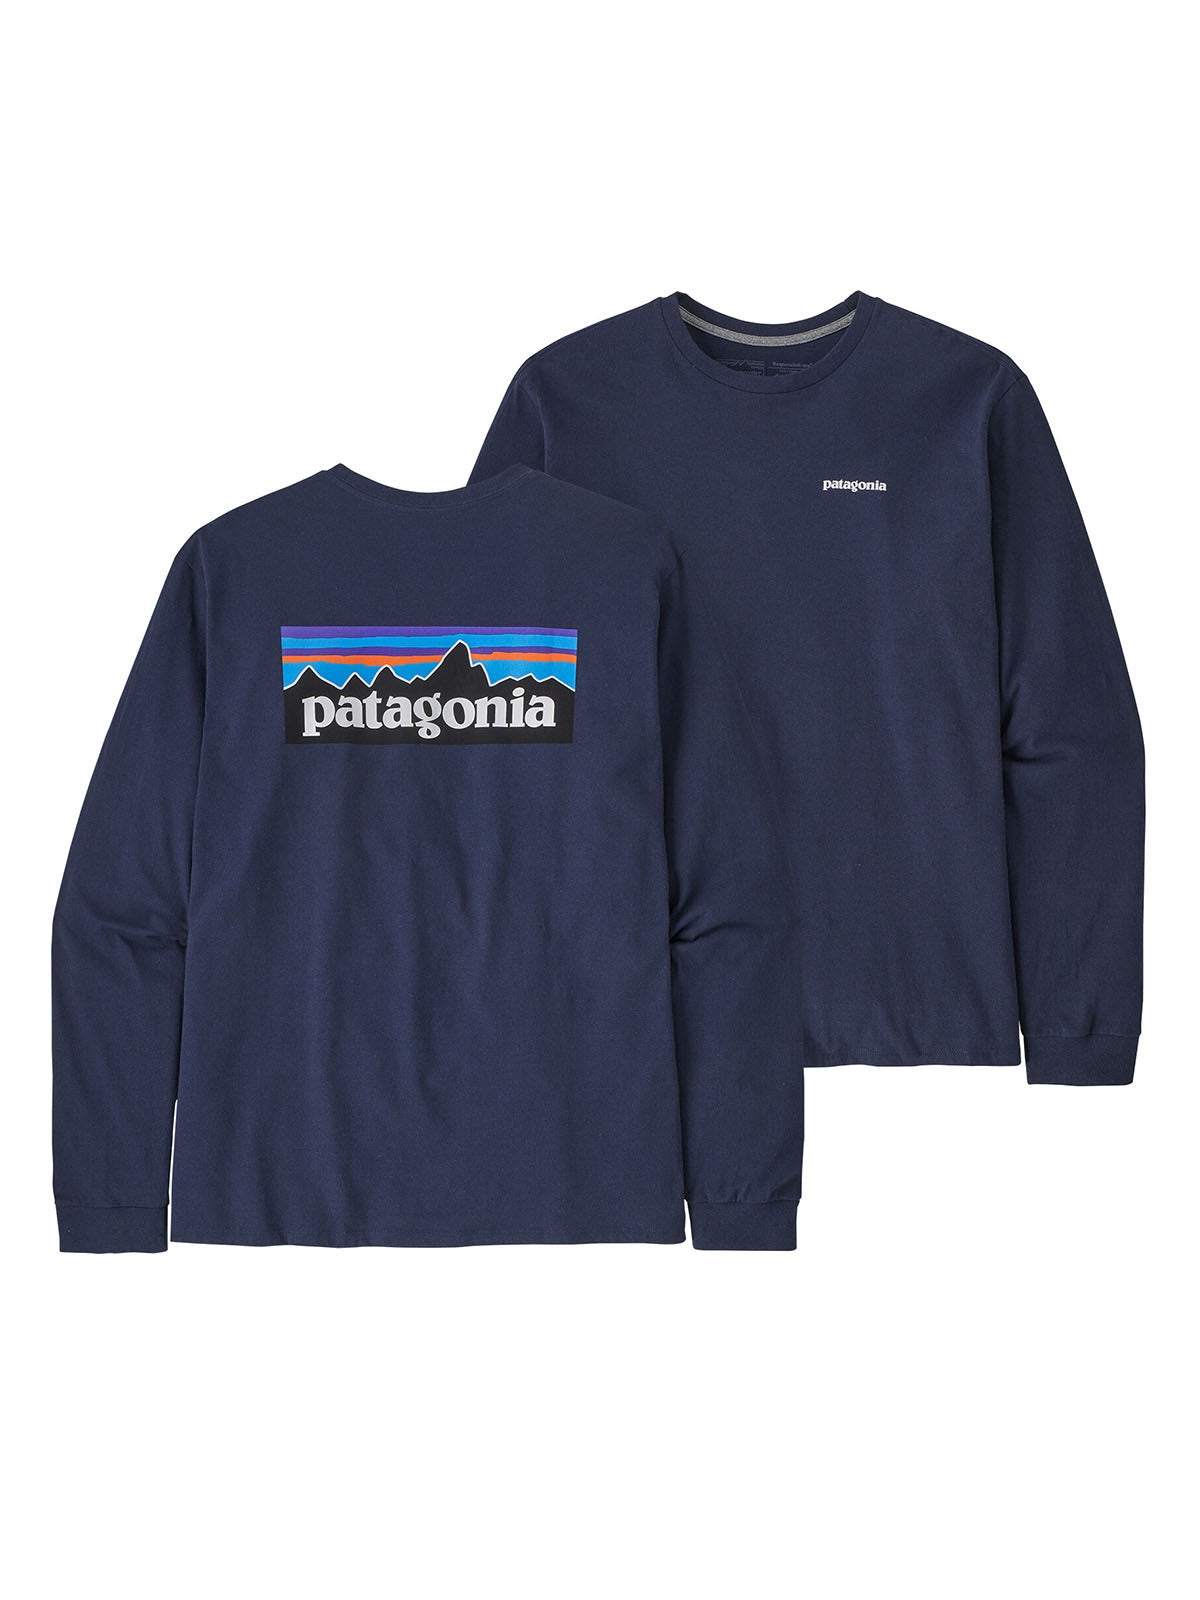 T-shirt Uomo Patagonia - Long-Sleeved P-6 Logo Responsibili-Tee® - Blu